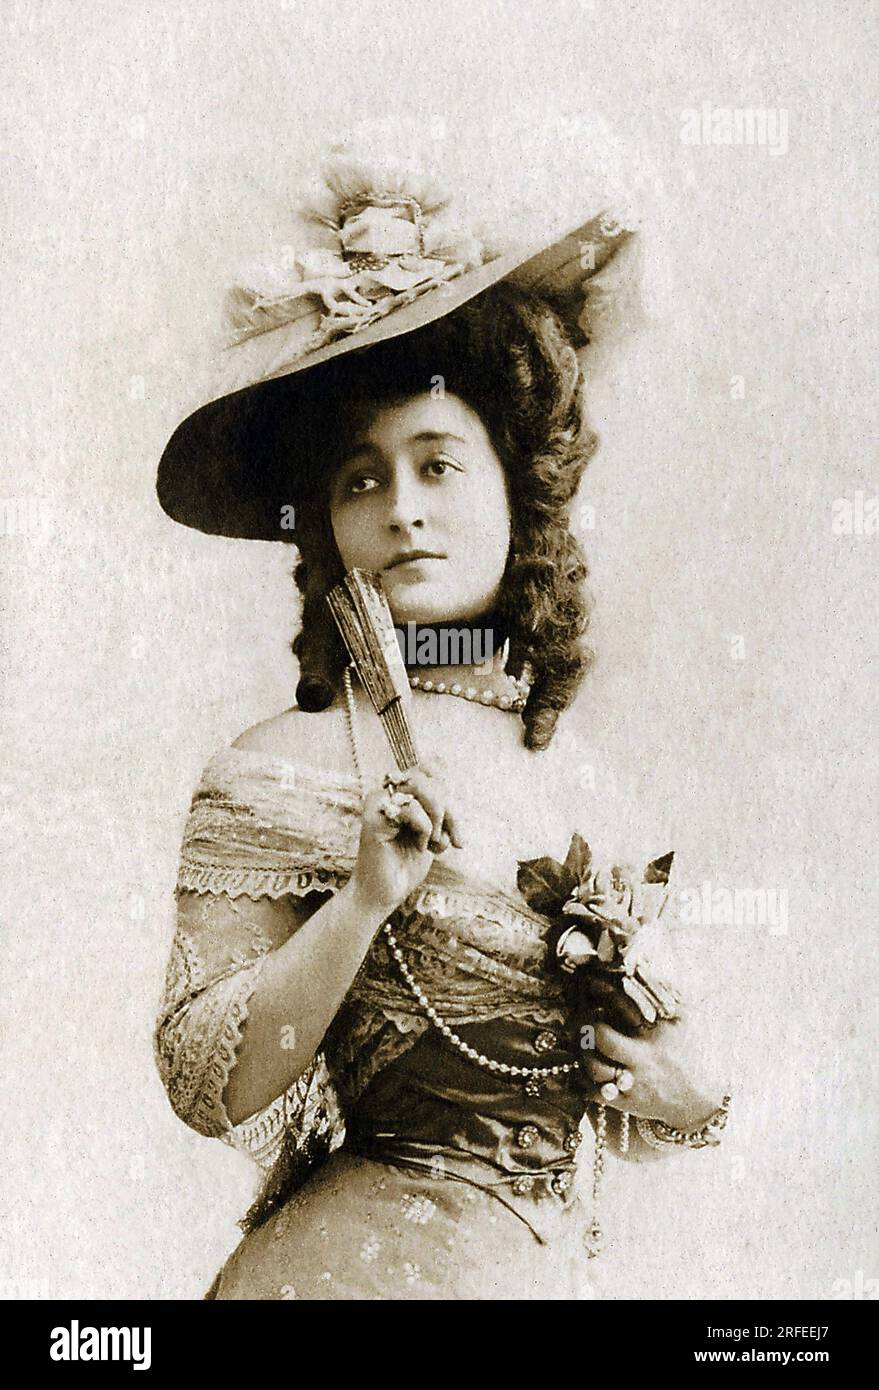 Portrait de Cecile Sorel (1873-1966), actrice francaise. Fotografie, Debüt du 20e Siecle, Paris. Stockfoto